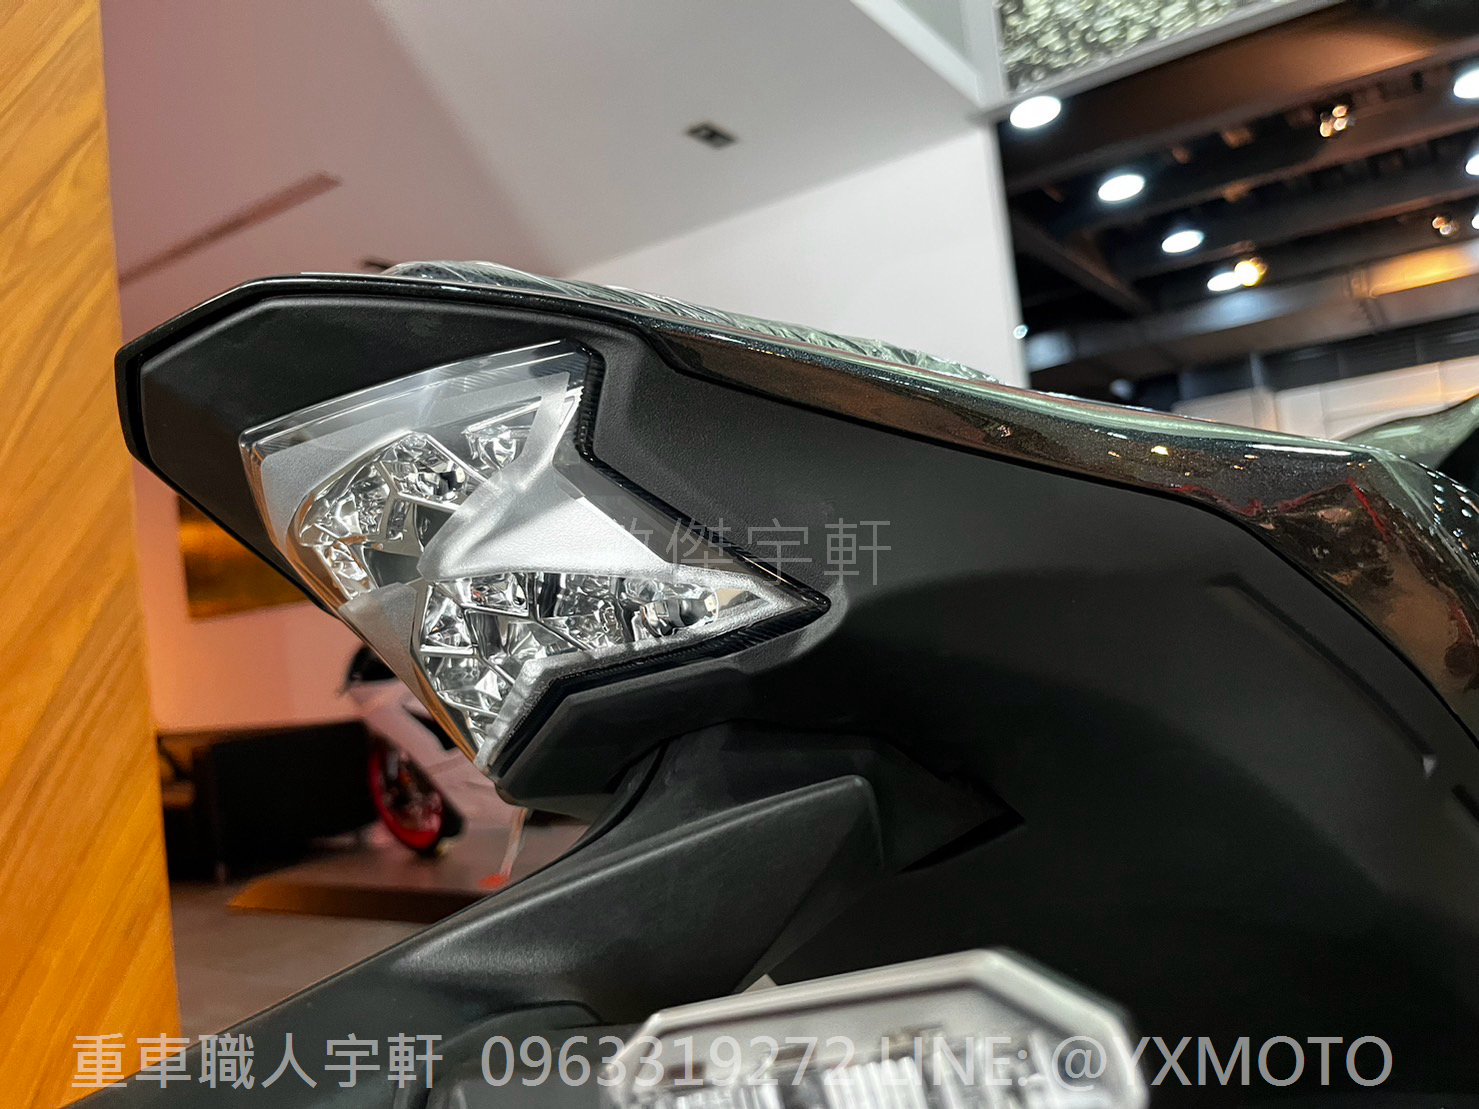 KAWASAKI Z900新車出售中 【敏傑宇軒】2023 KAWASAKI Z900 紅骨亮灰 總代理公司車 | 重車銷售職人-宇軒 (敏傑)